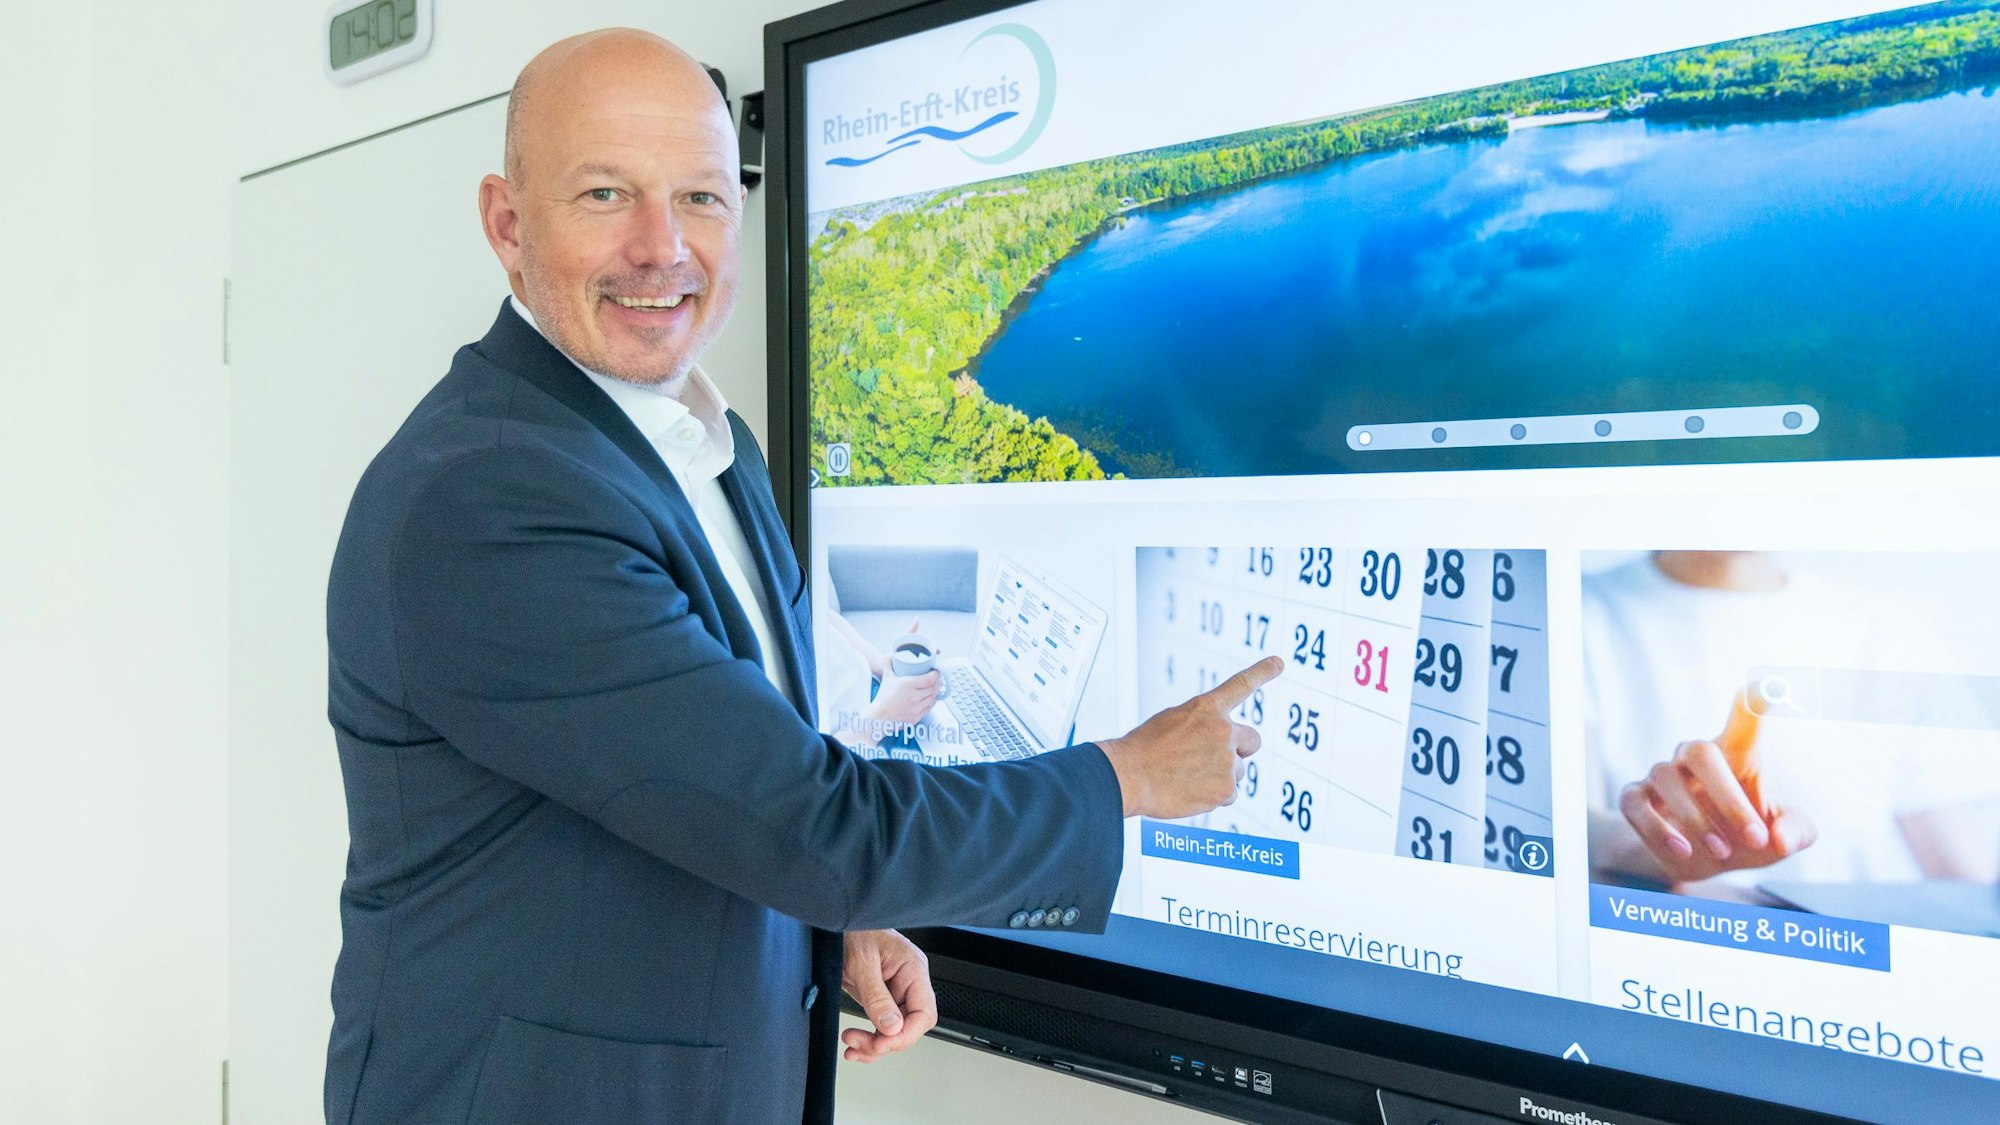 Das Foto zeigt Landrat Frank Rock. Er zeigt auf die Startseite der neuen Homepage des Rhein-Erft-Kreises auf einem großen Monitor.